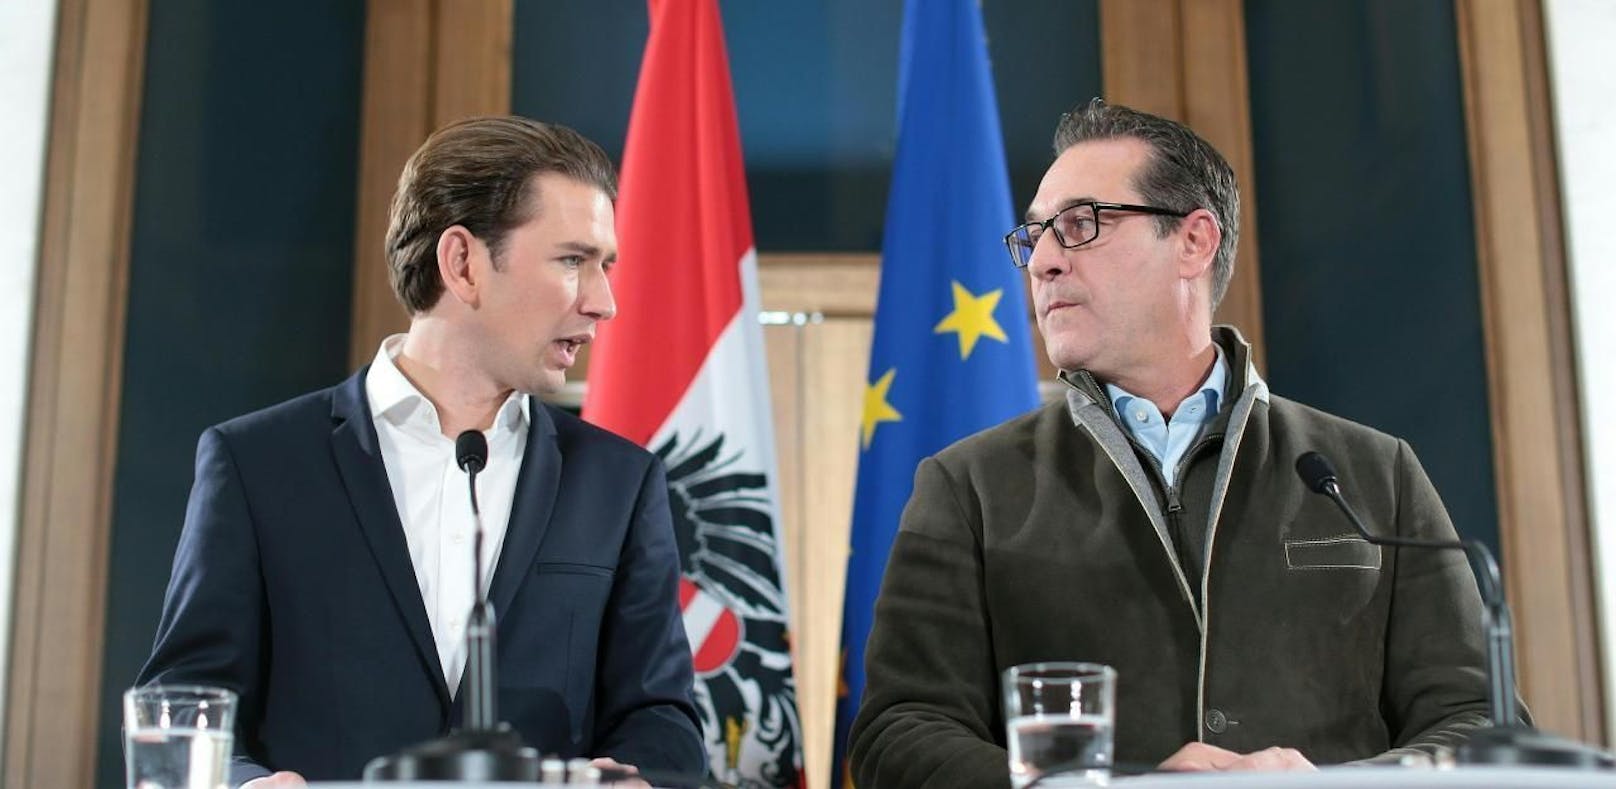 ÖVP-Chef Sebastian Kurz (l.) und FPÖ-Obmann Heinz-Christian Strache bei einer gemeinsamen Presseerklärung zum Stand der Koalitionsverhandlungen